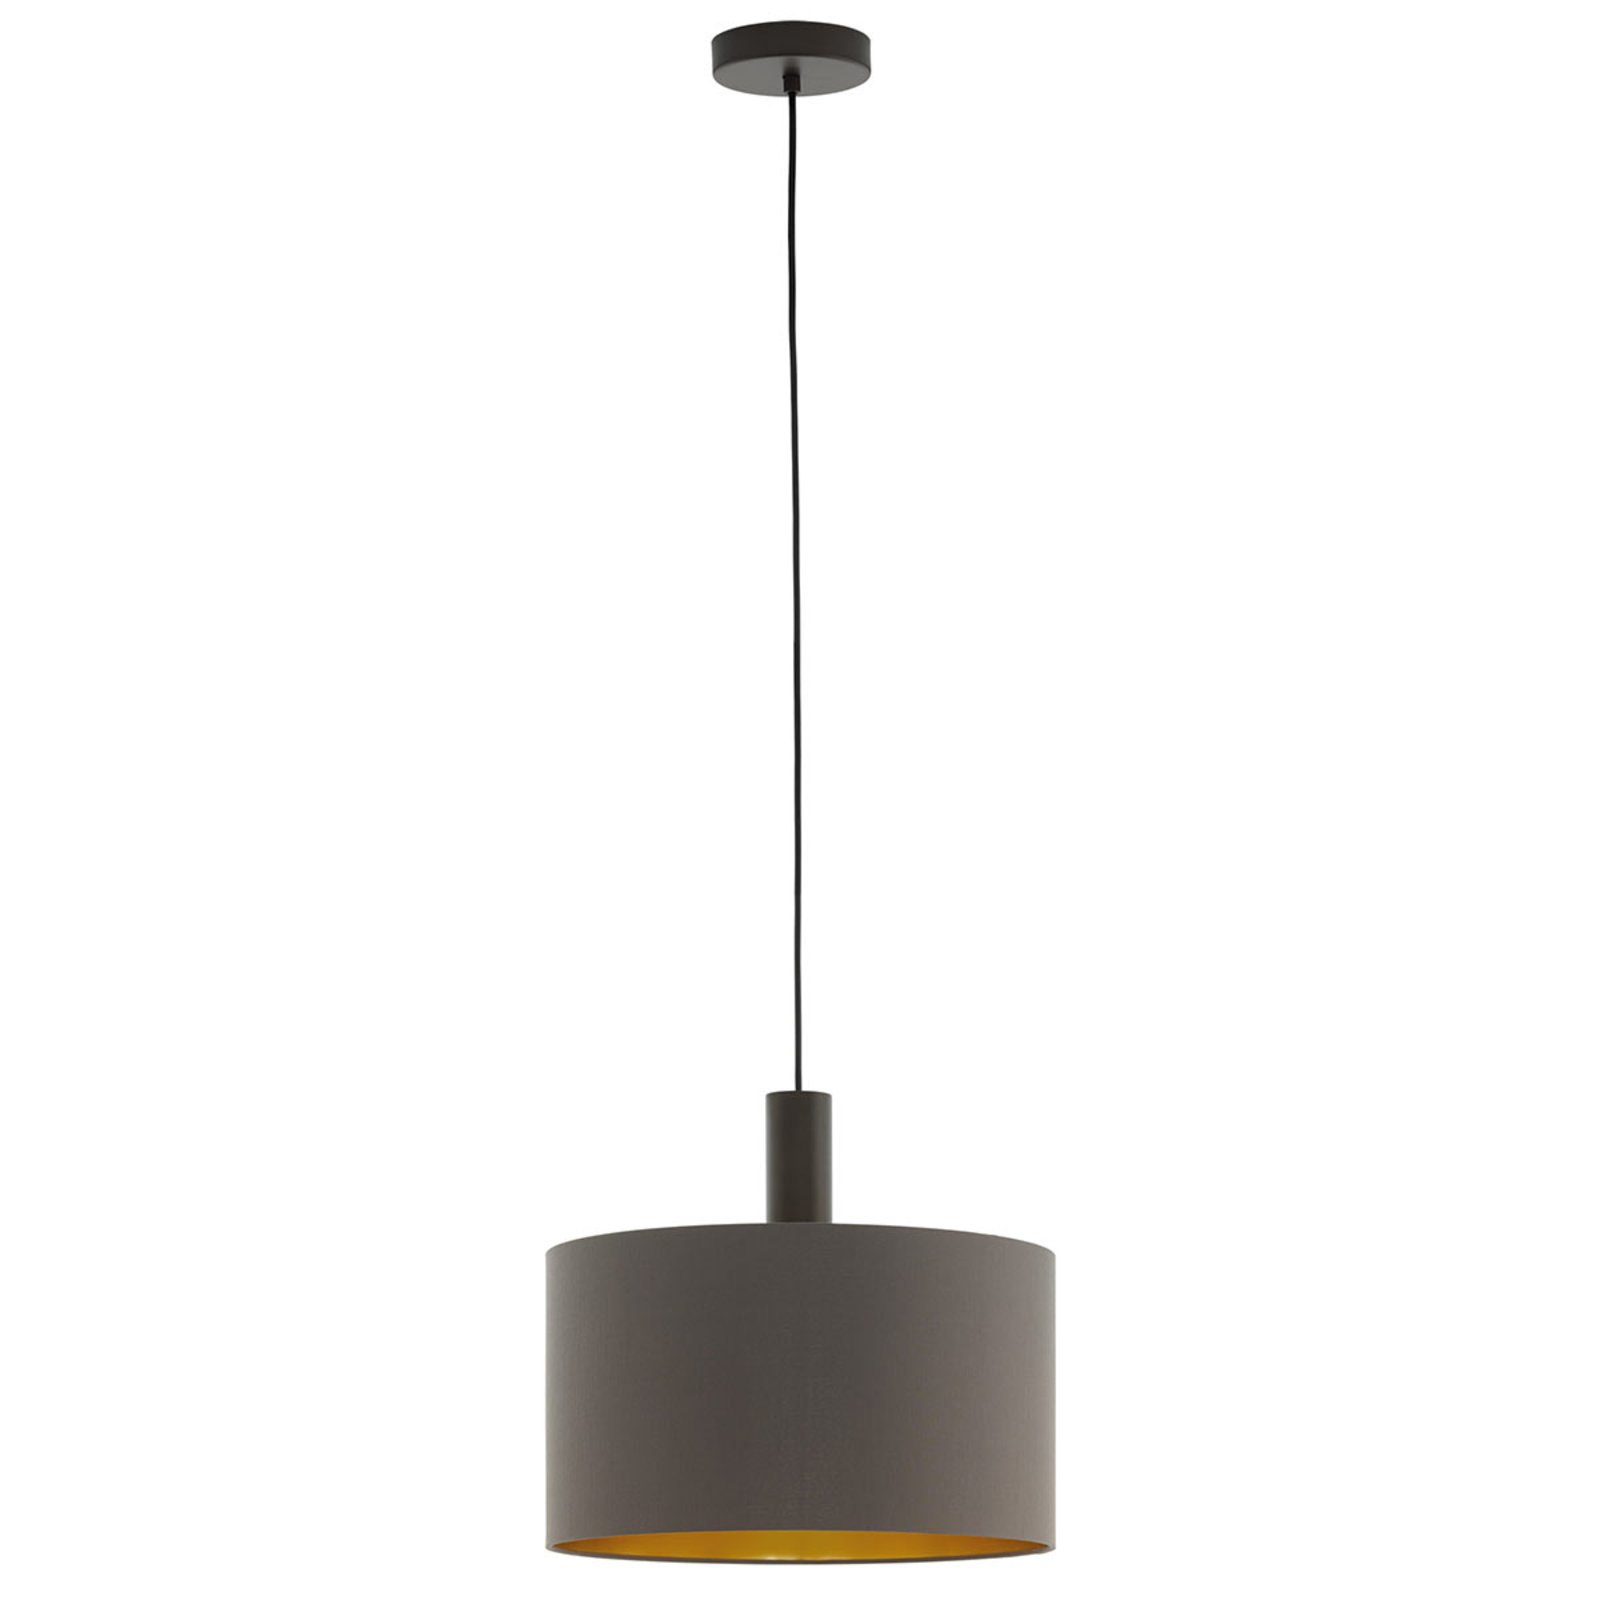 Hanglamp Concessa cappuccino/goud Ø 38 cm